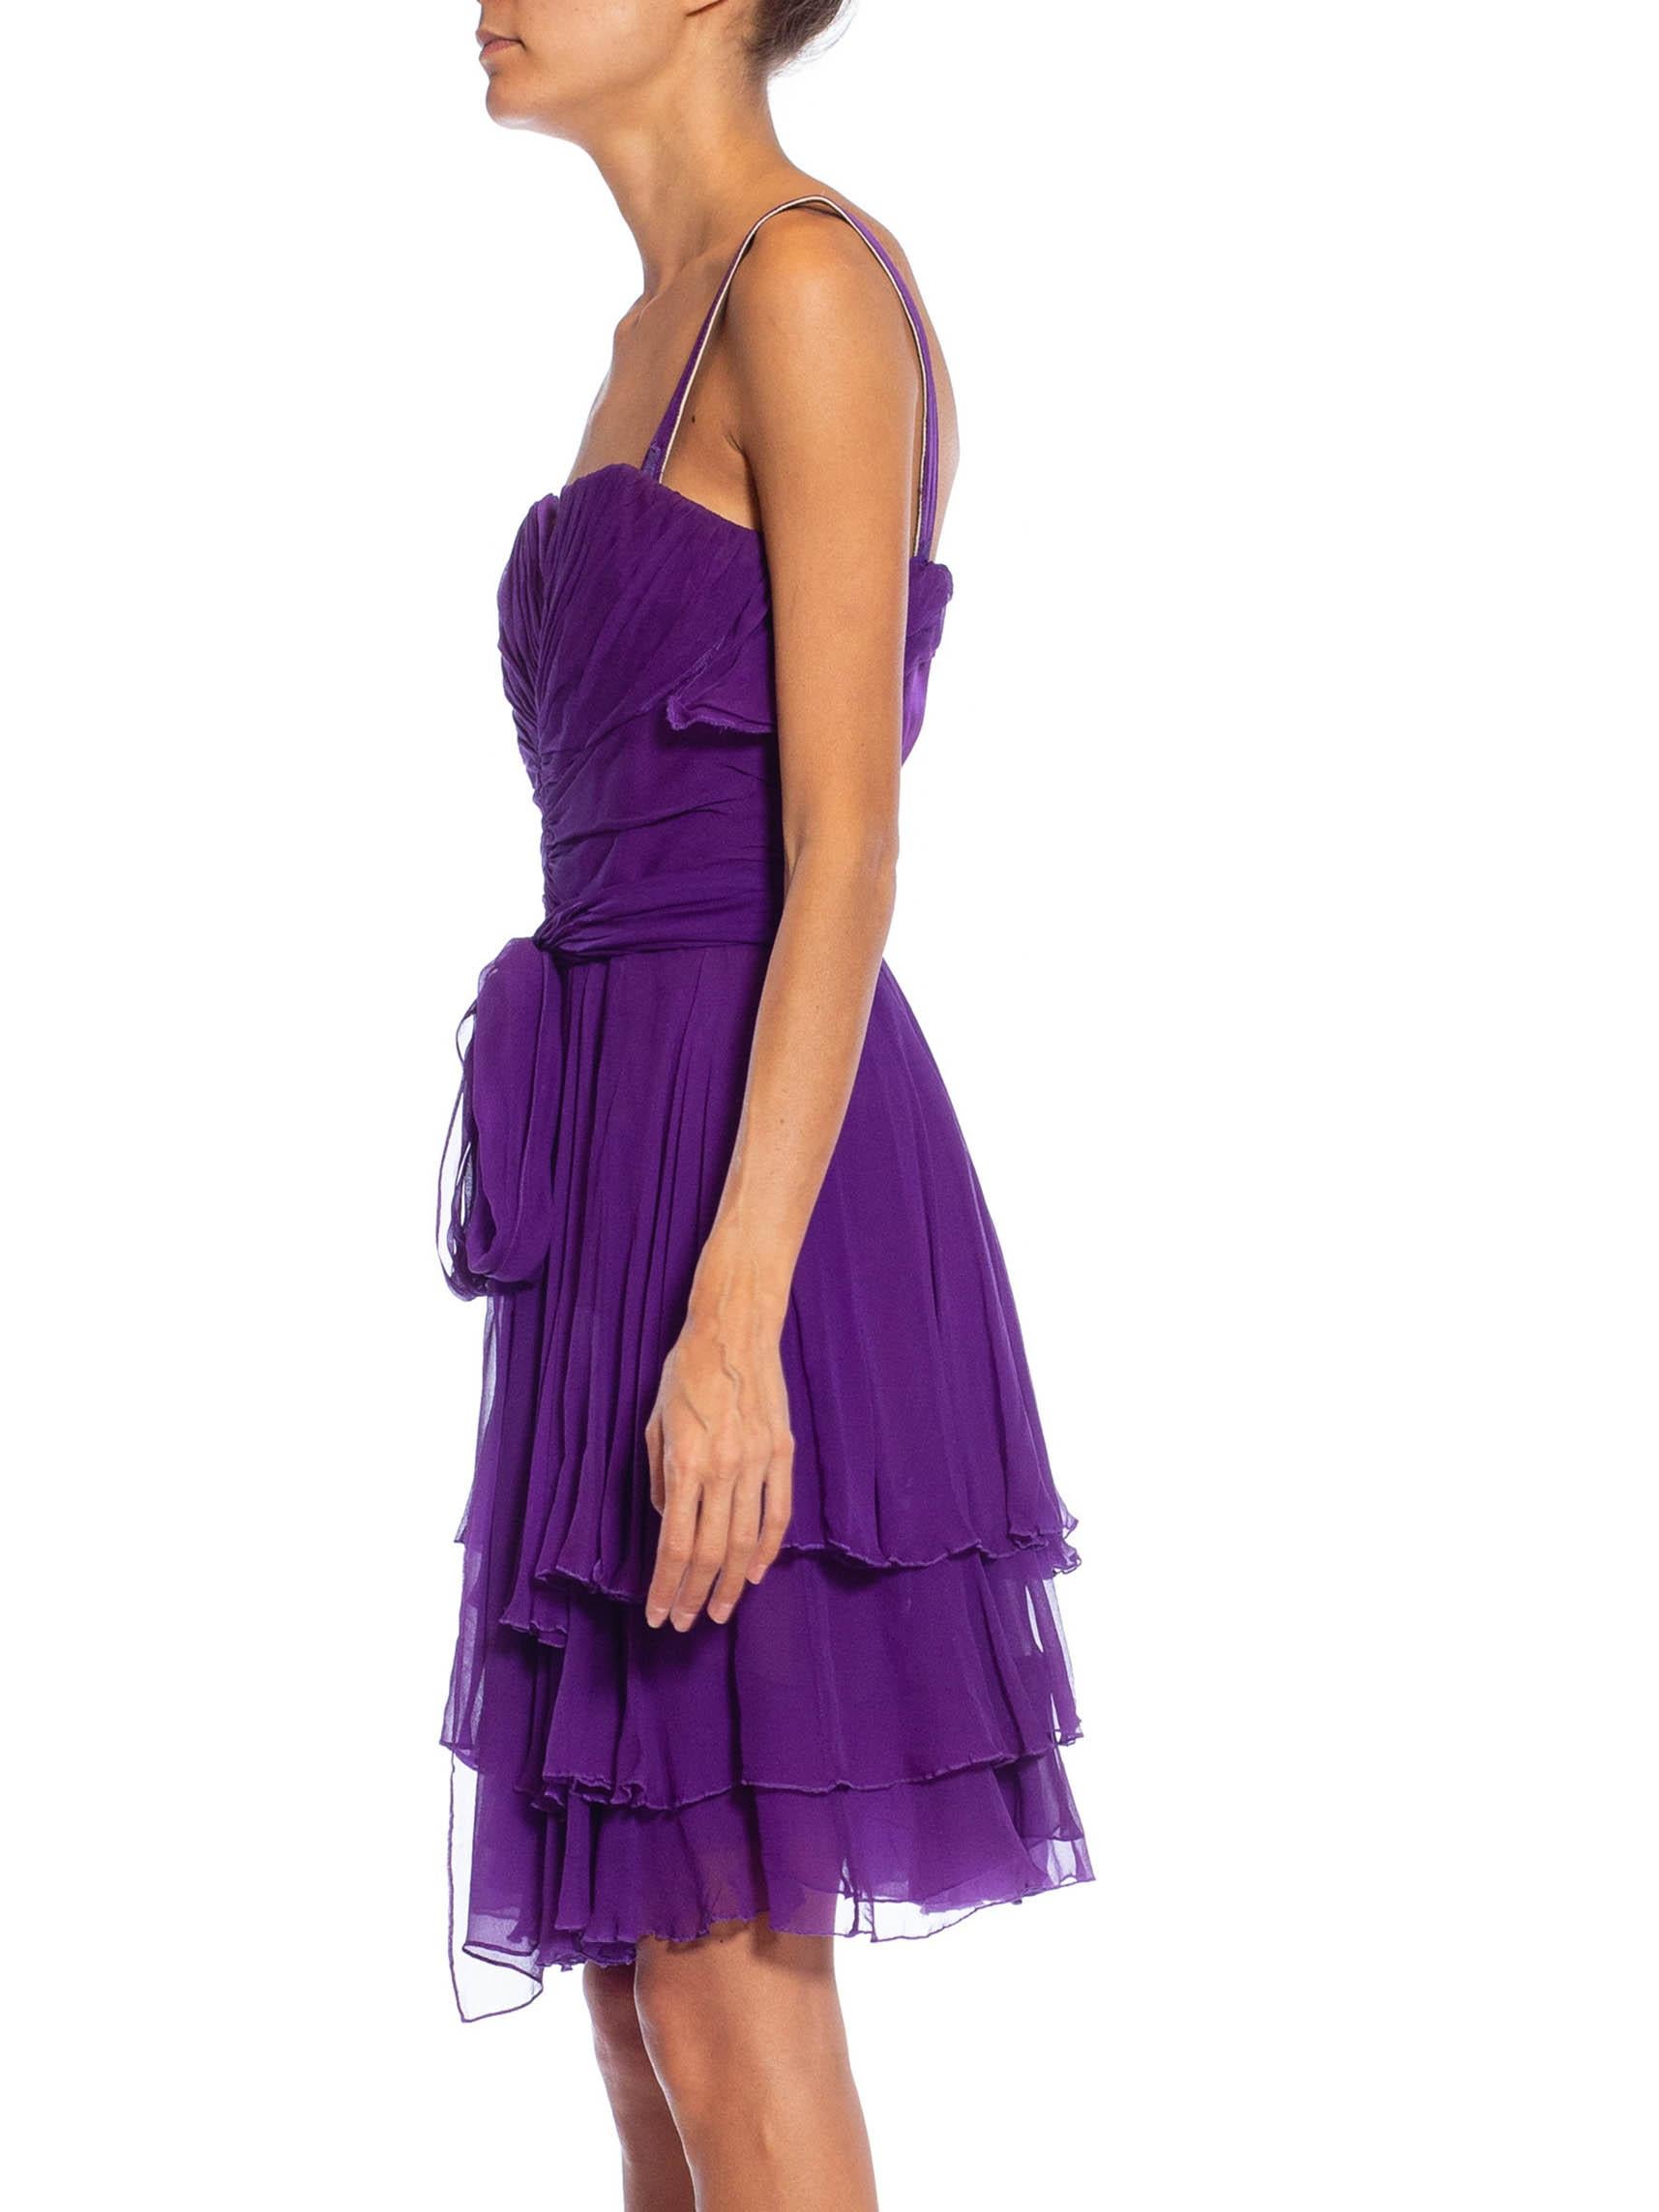 2000s purple dress